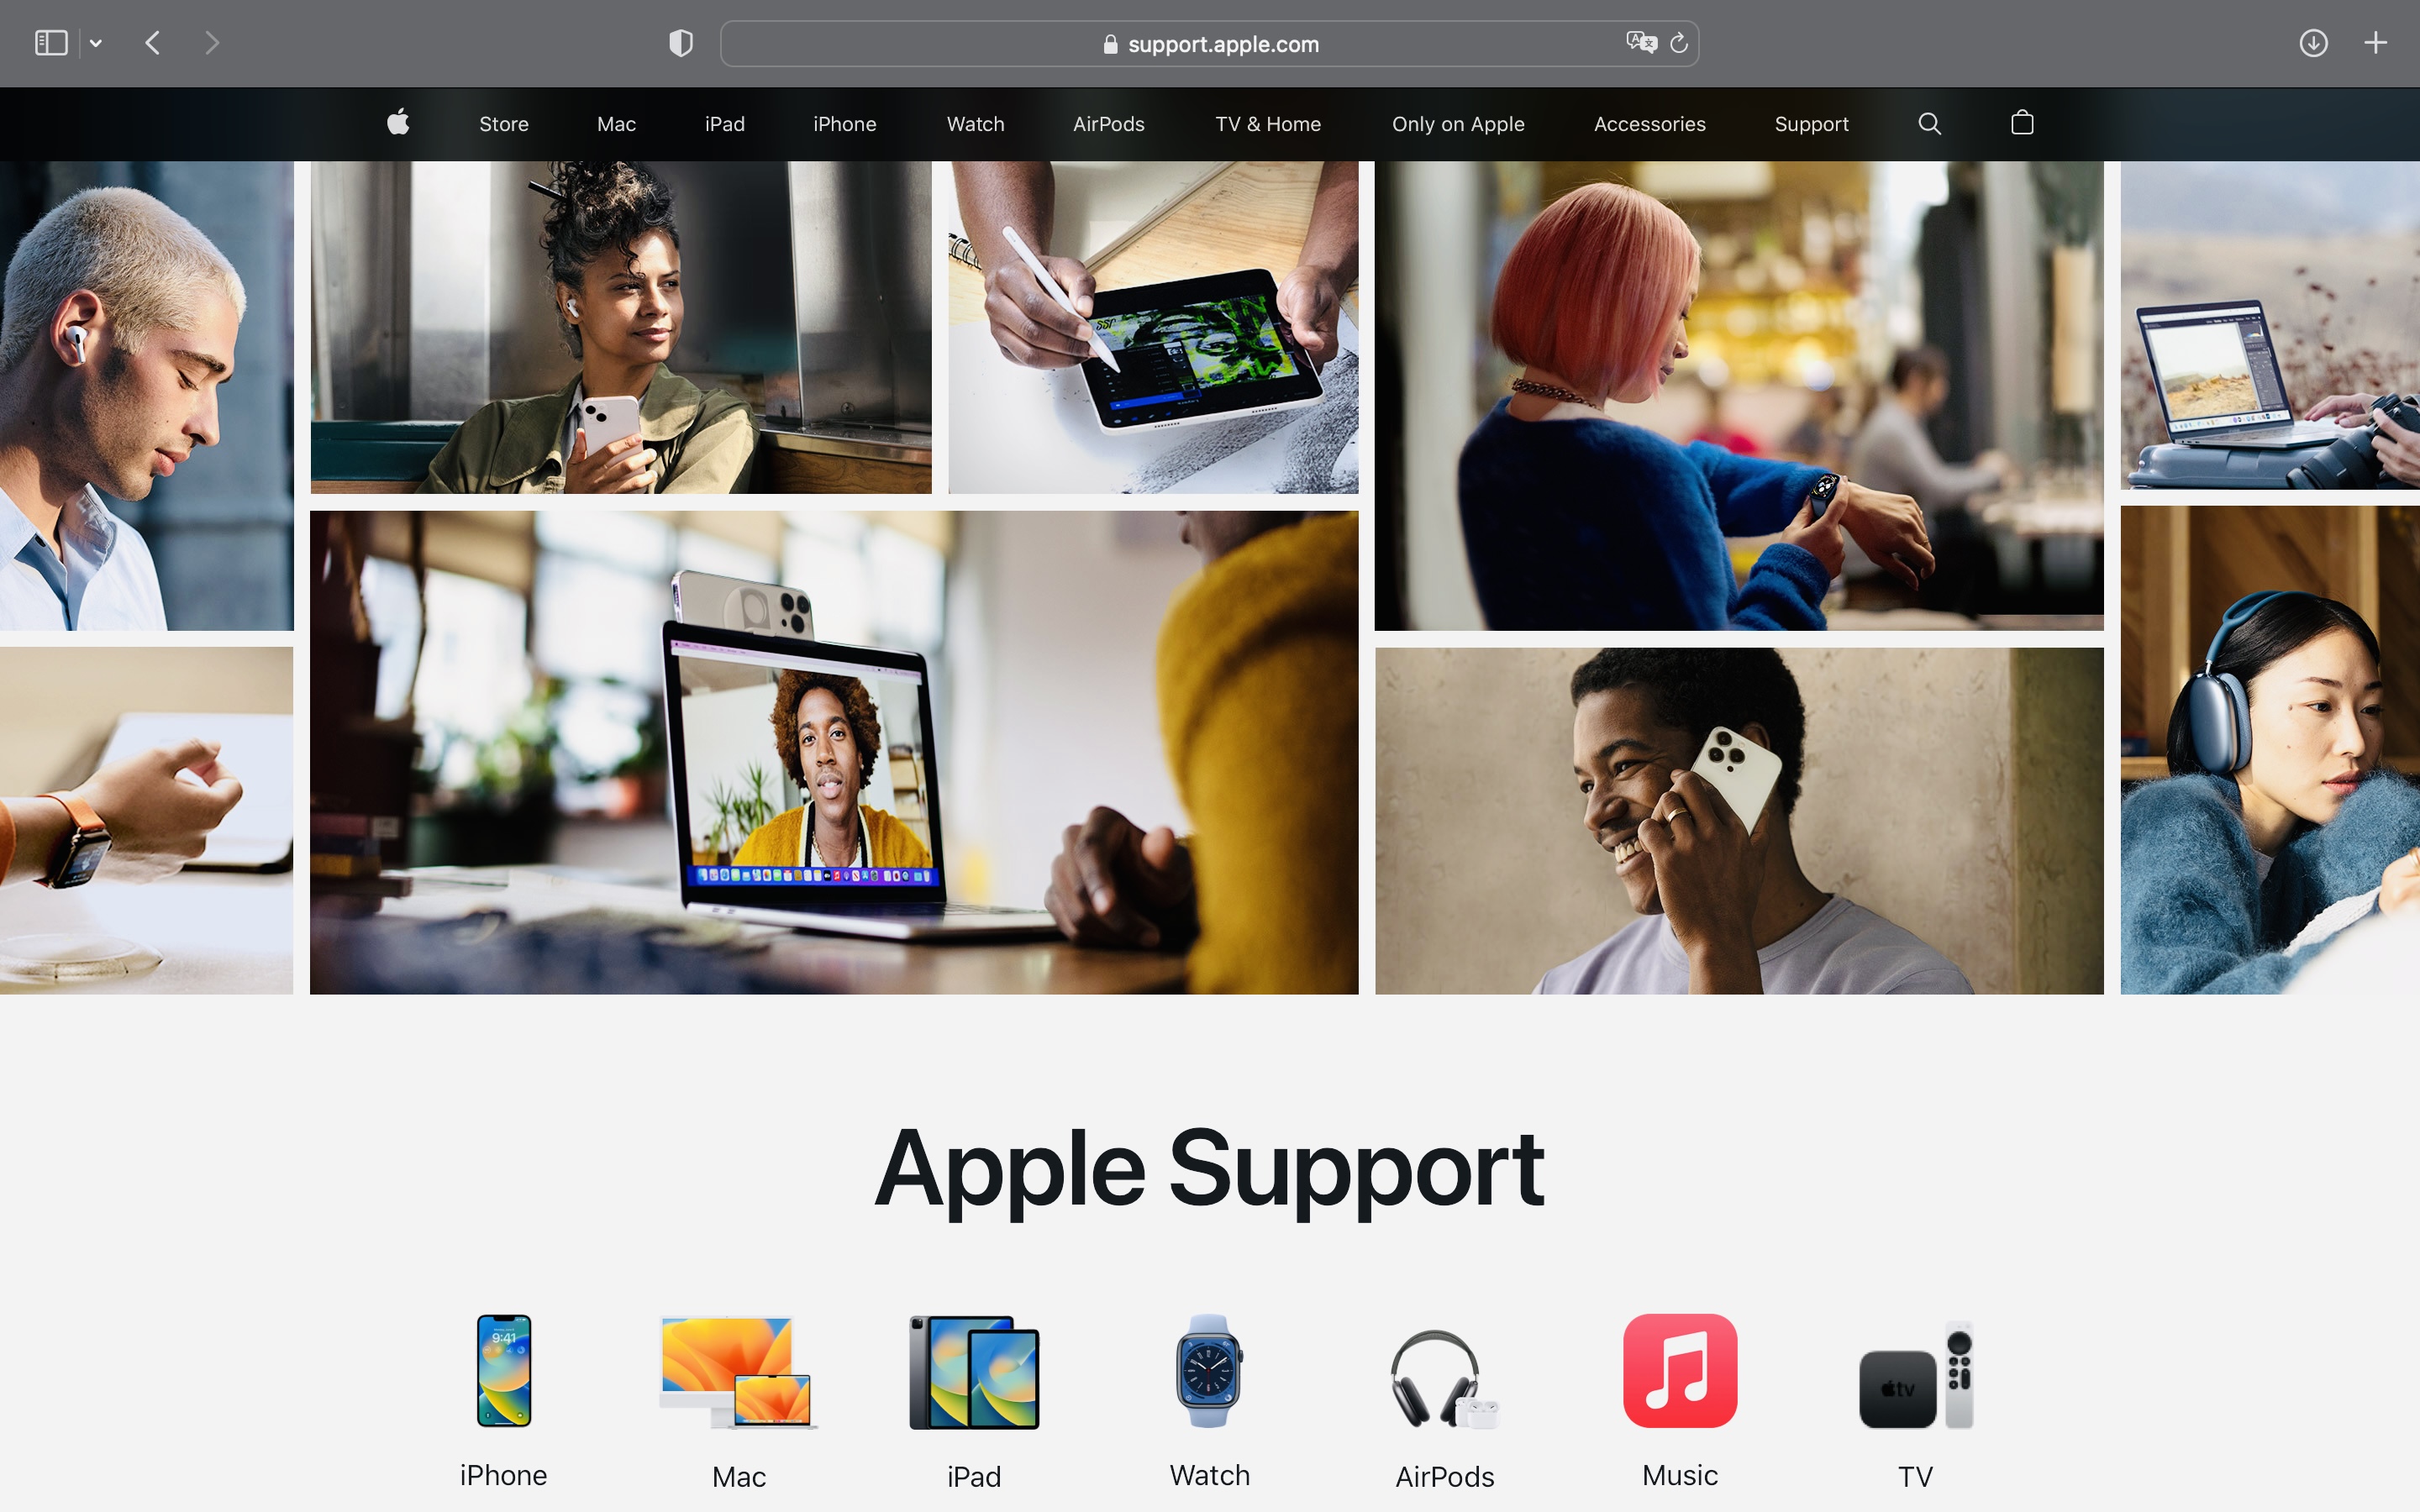 Apple полностью переделала дизайн сайта поддержки. Он стал гораздо удобнее